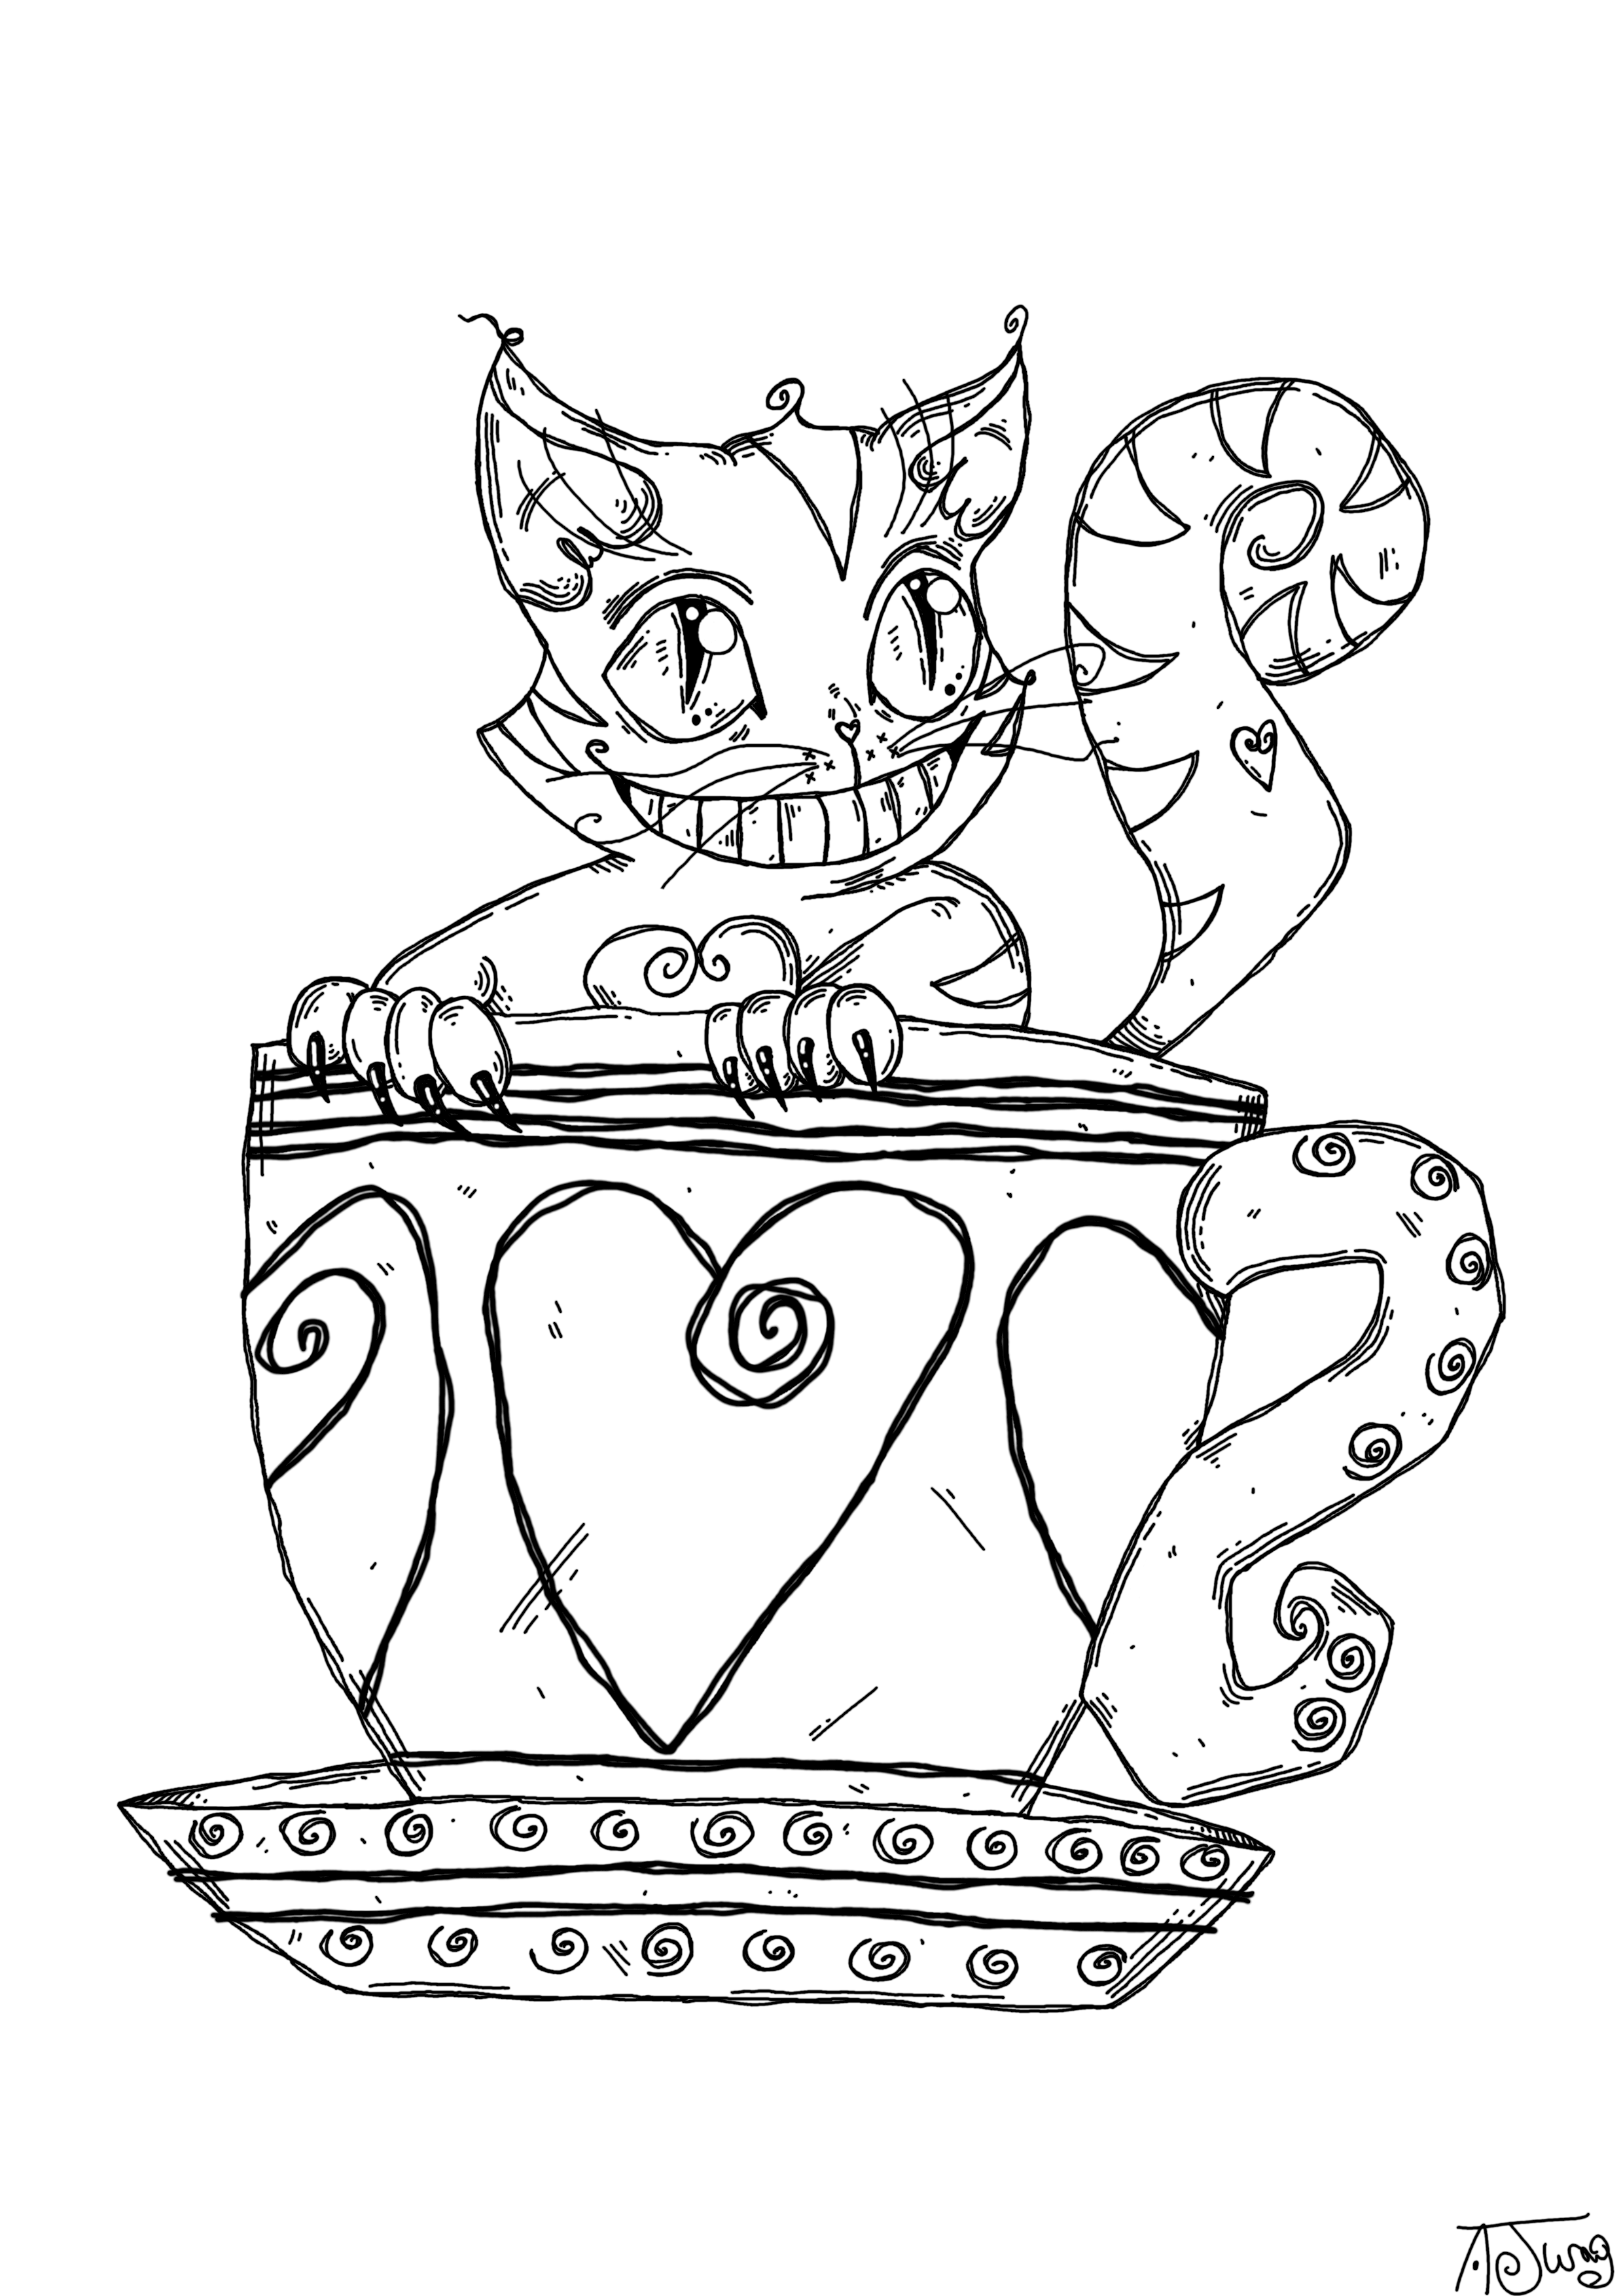 Le chat dans une tasse